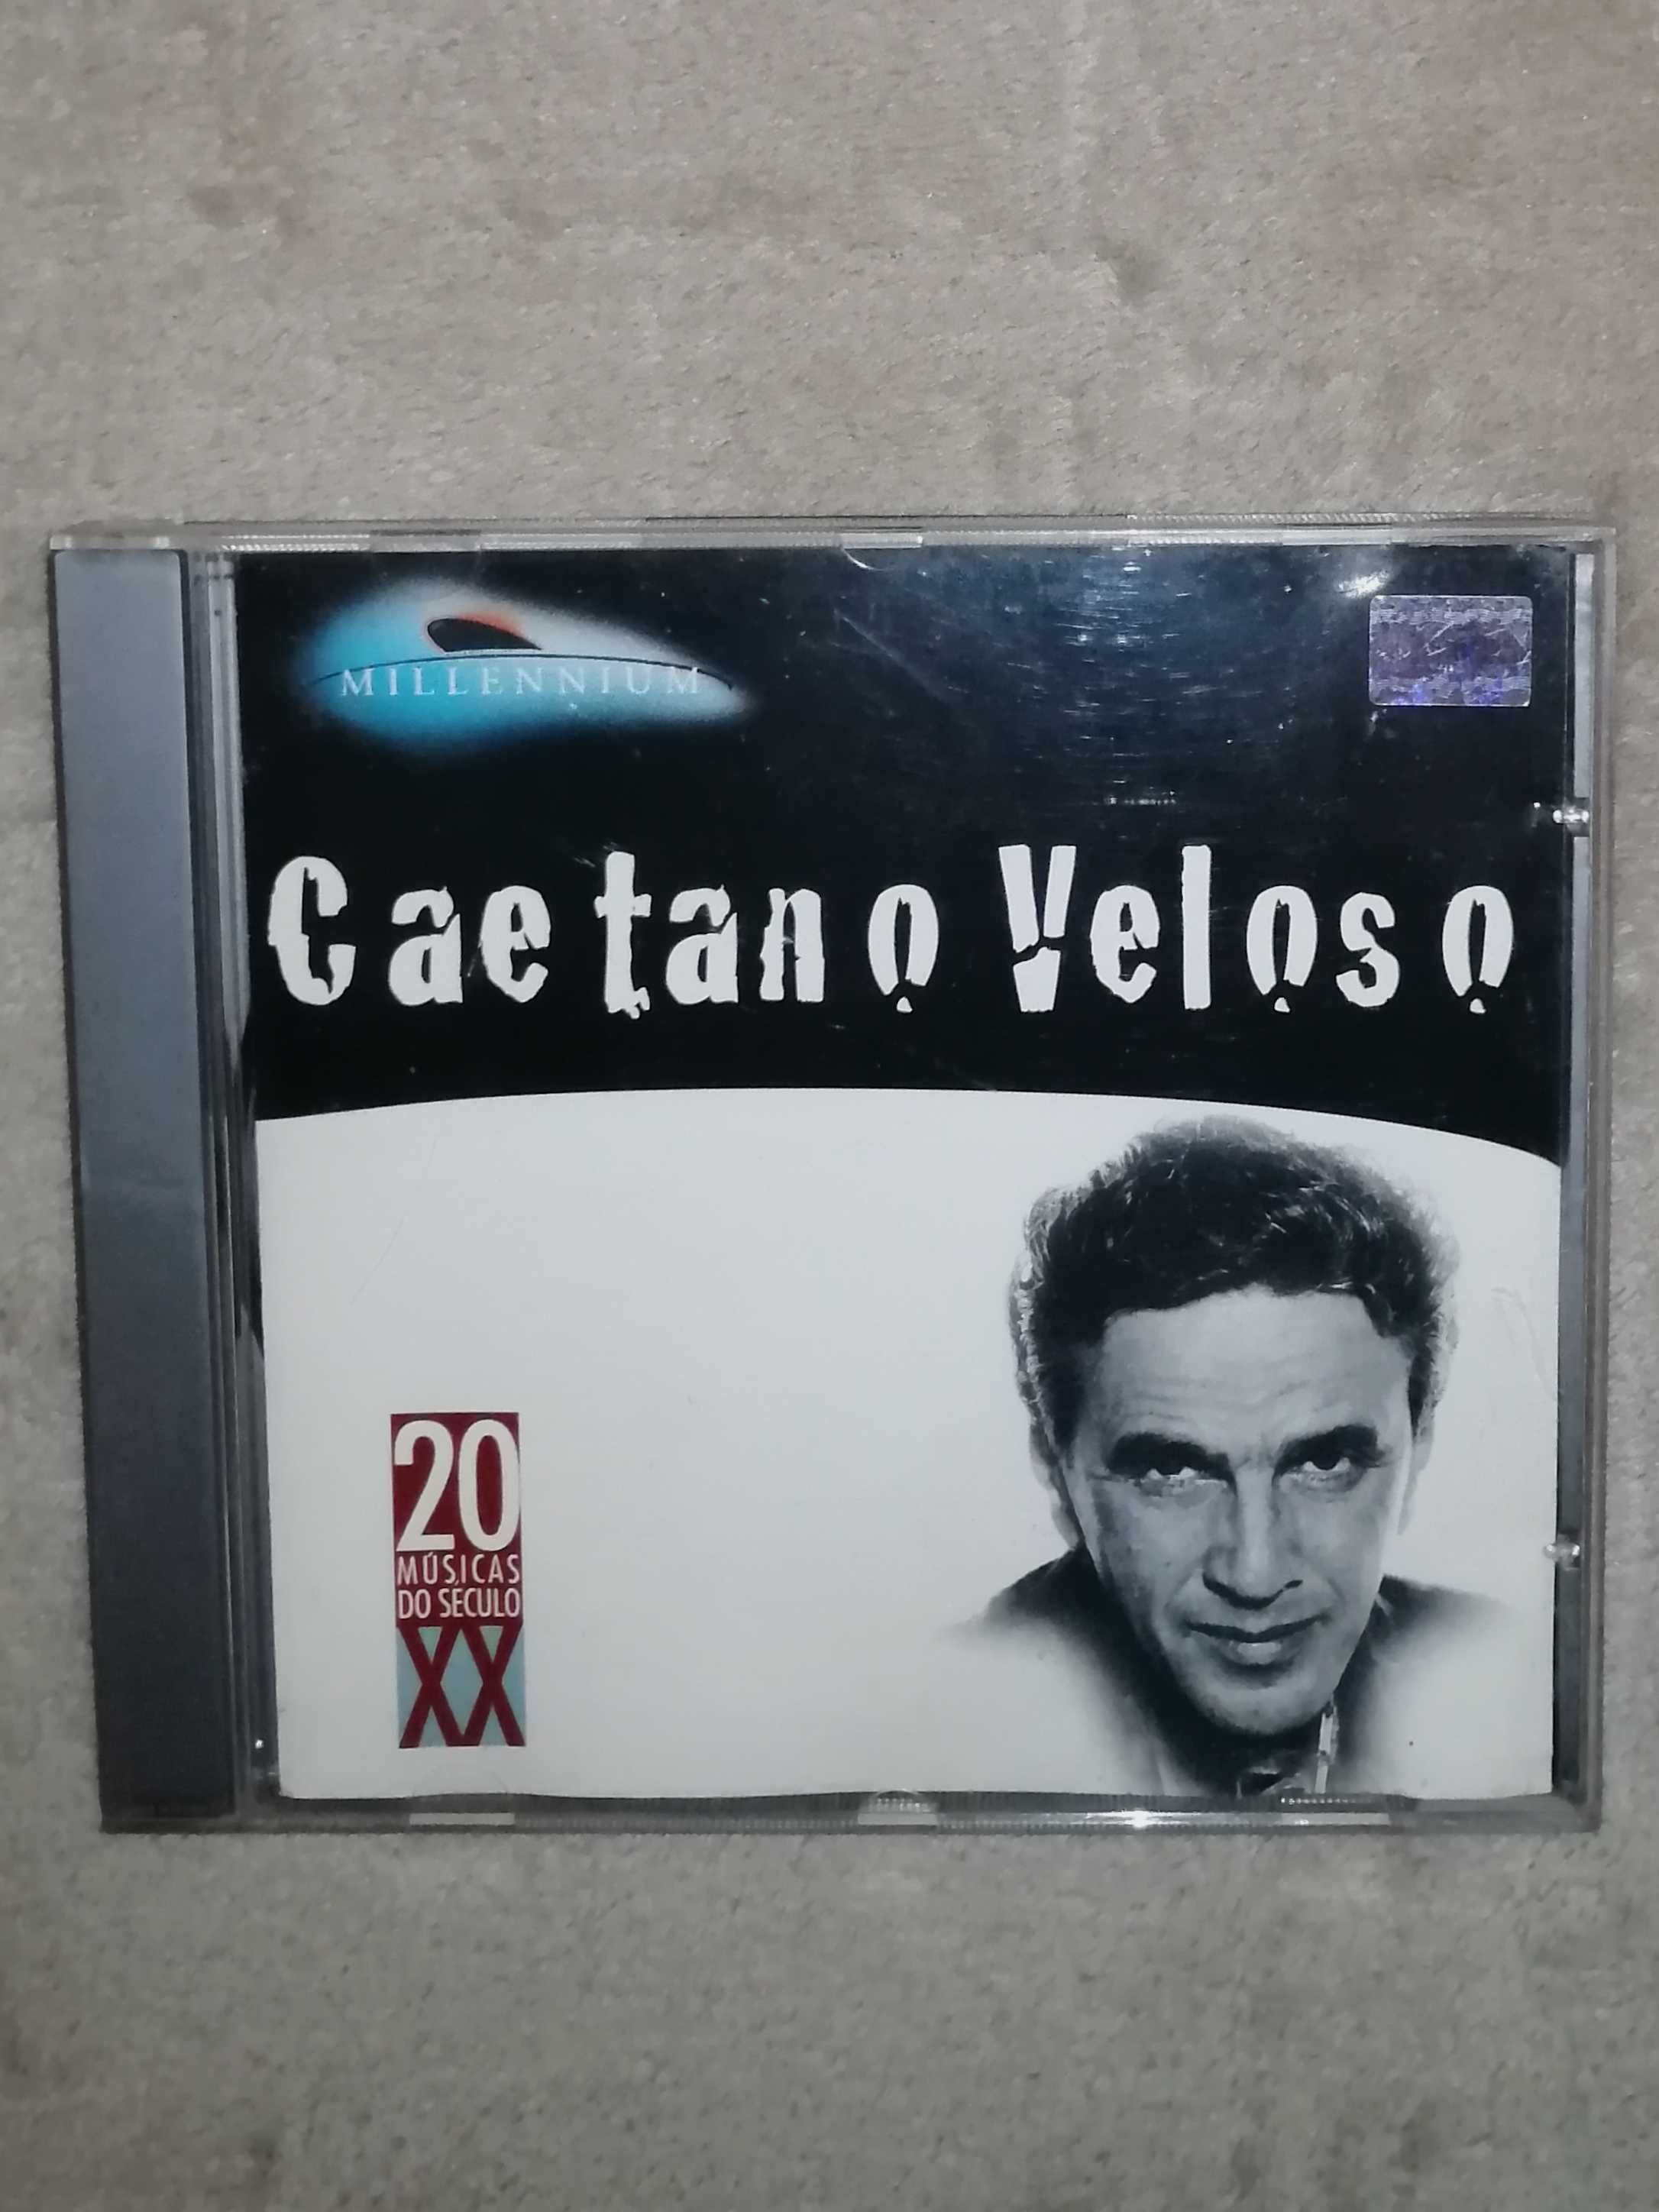 Caetano Veloso - Millenium